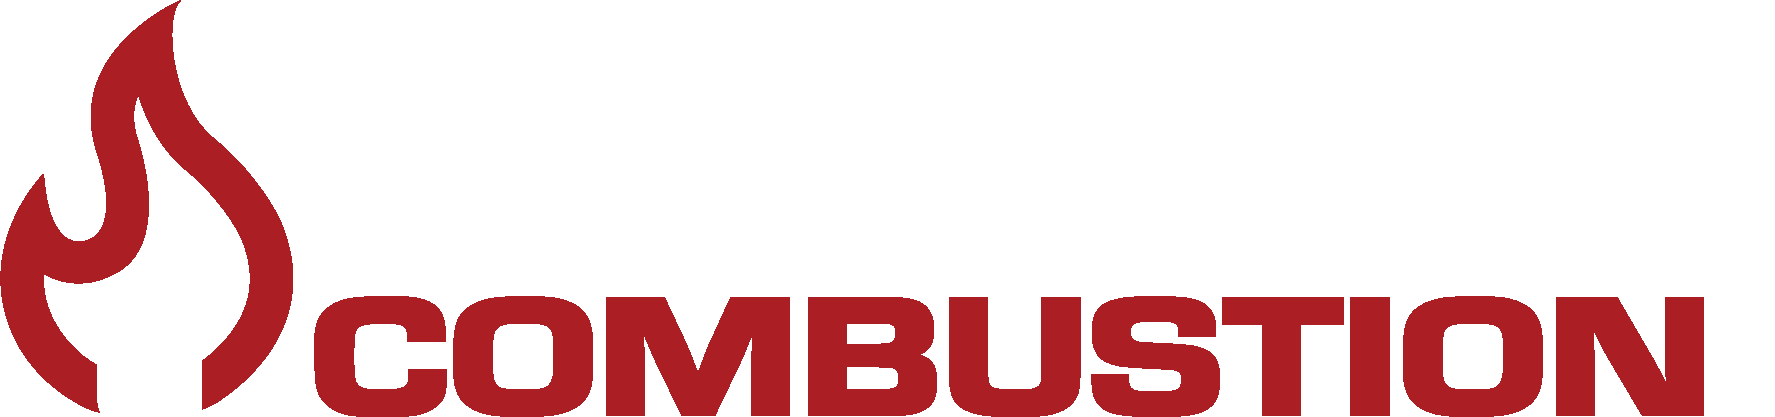 Rockford Combustion Logo WEB rev